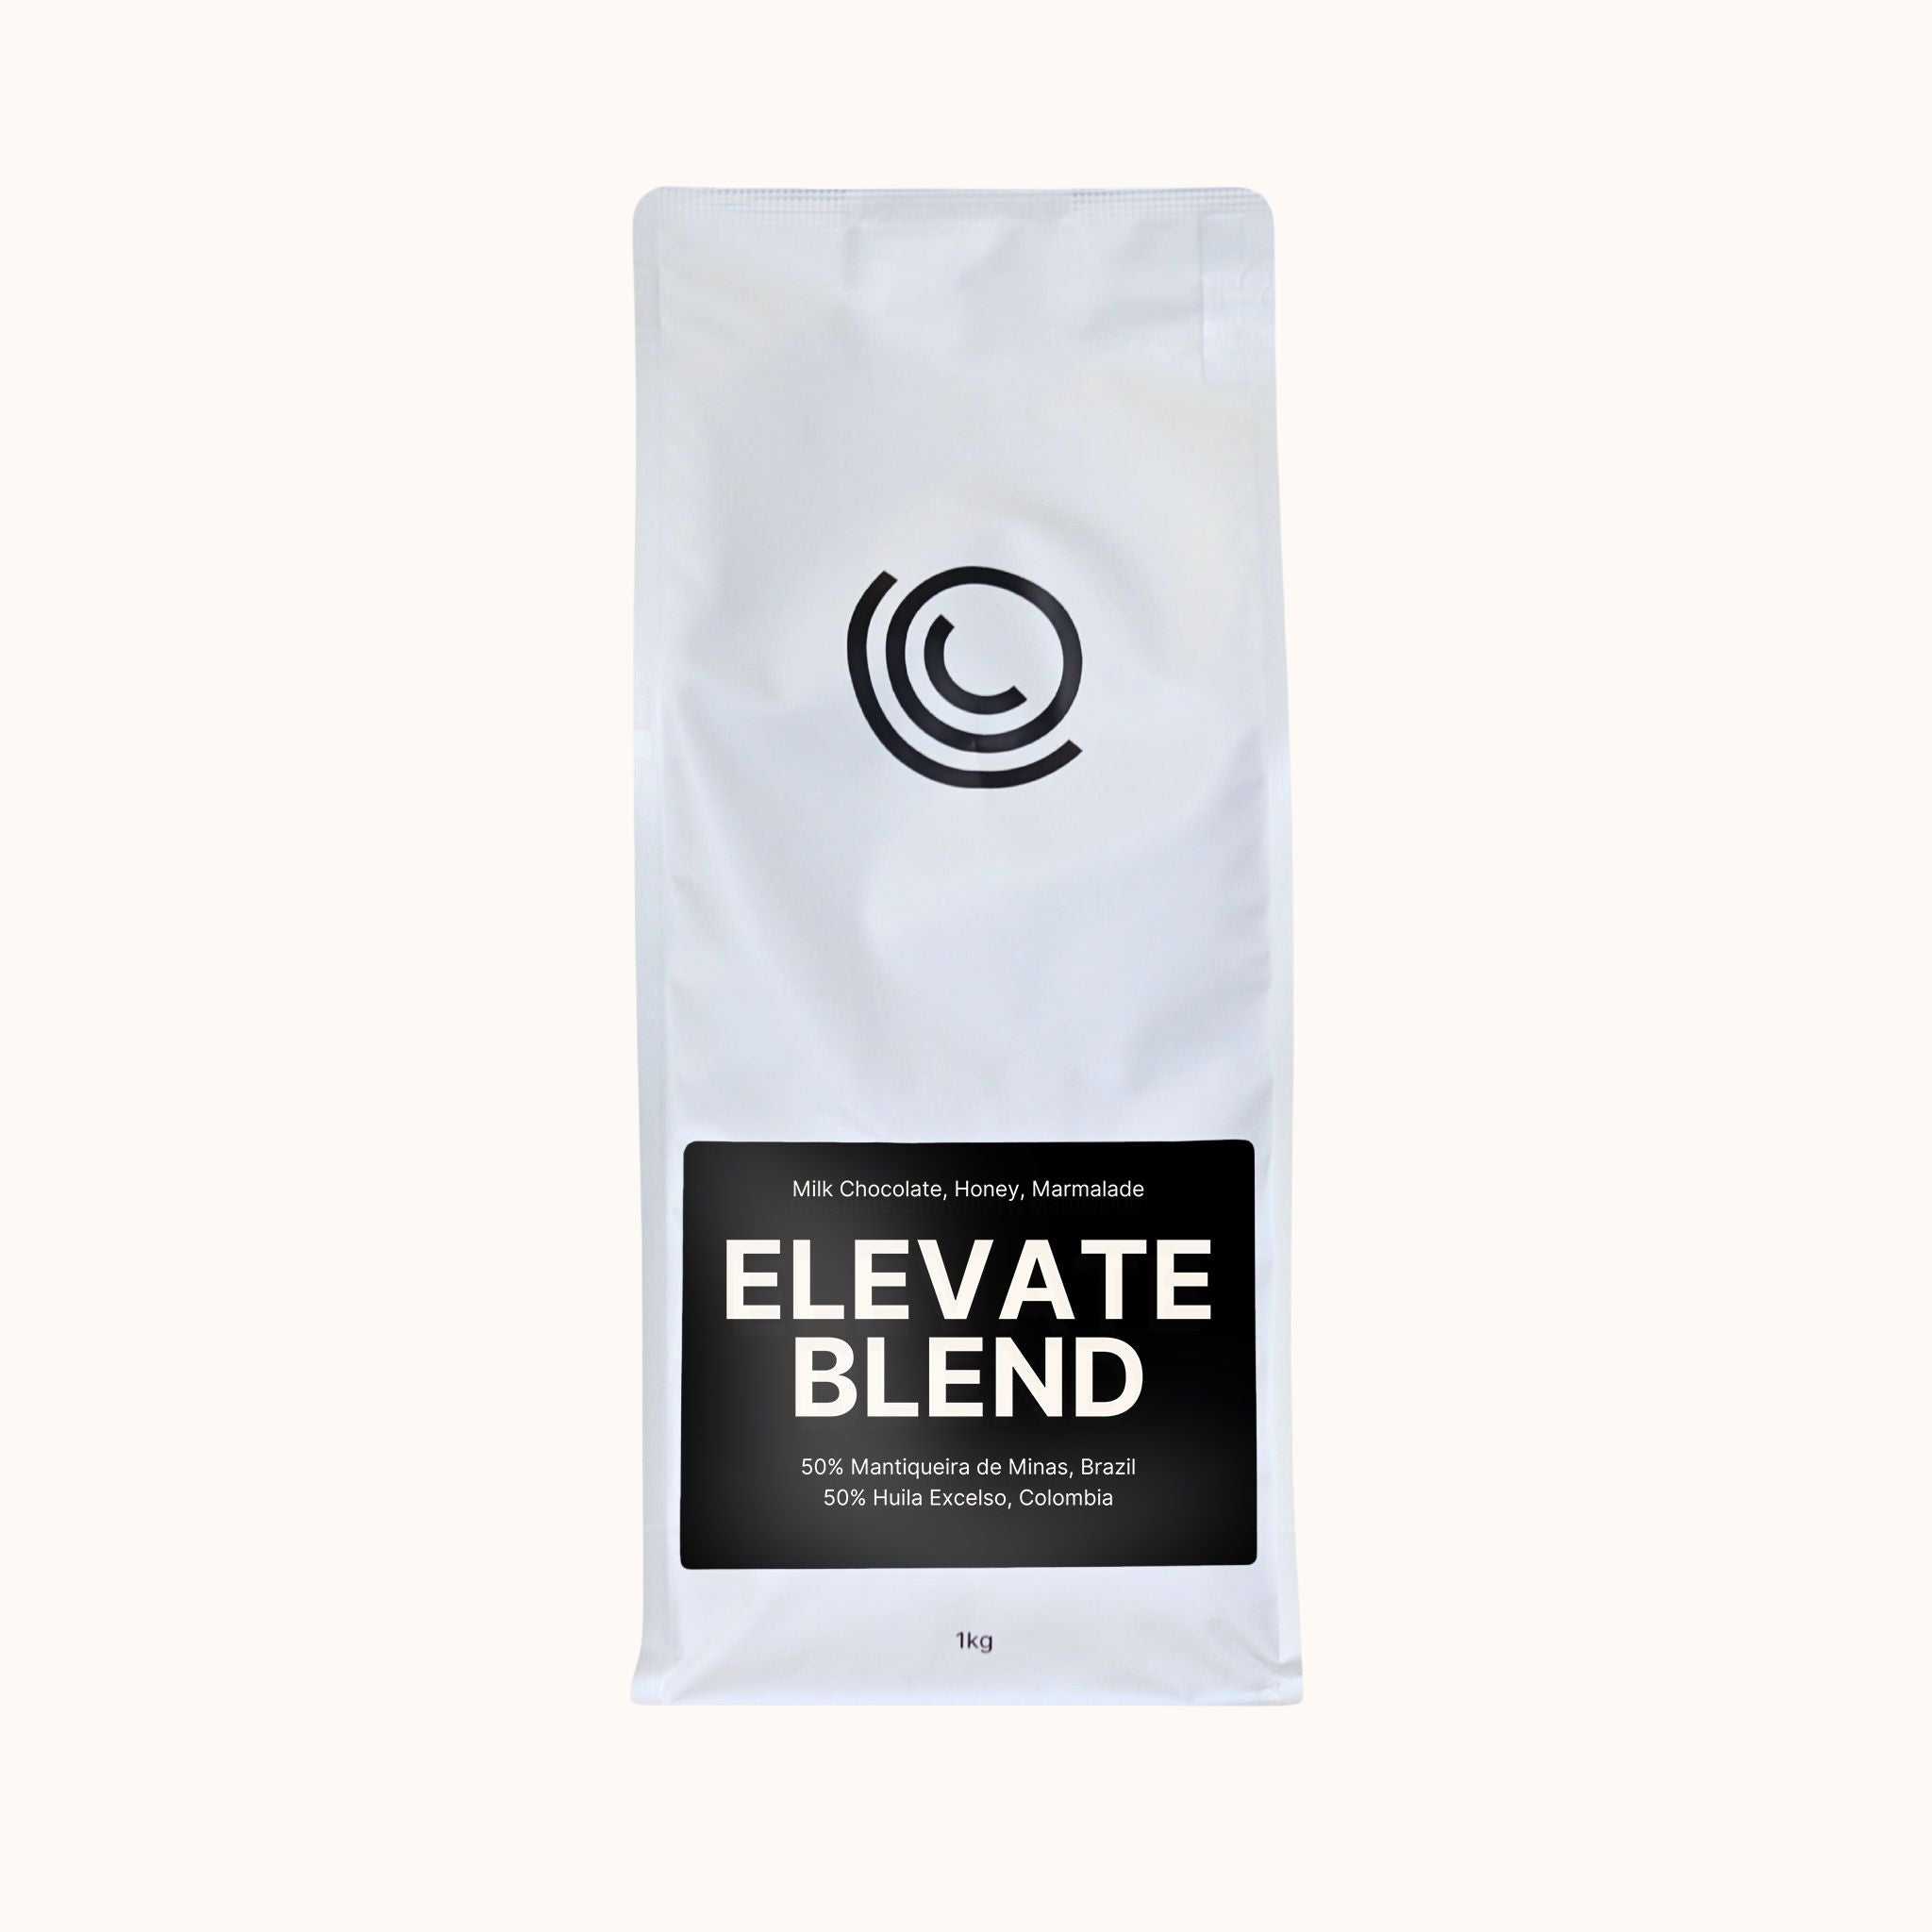 Coffee on Cue 1kg bag of Elevate Blend